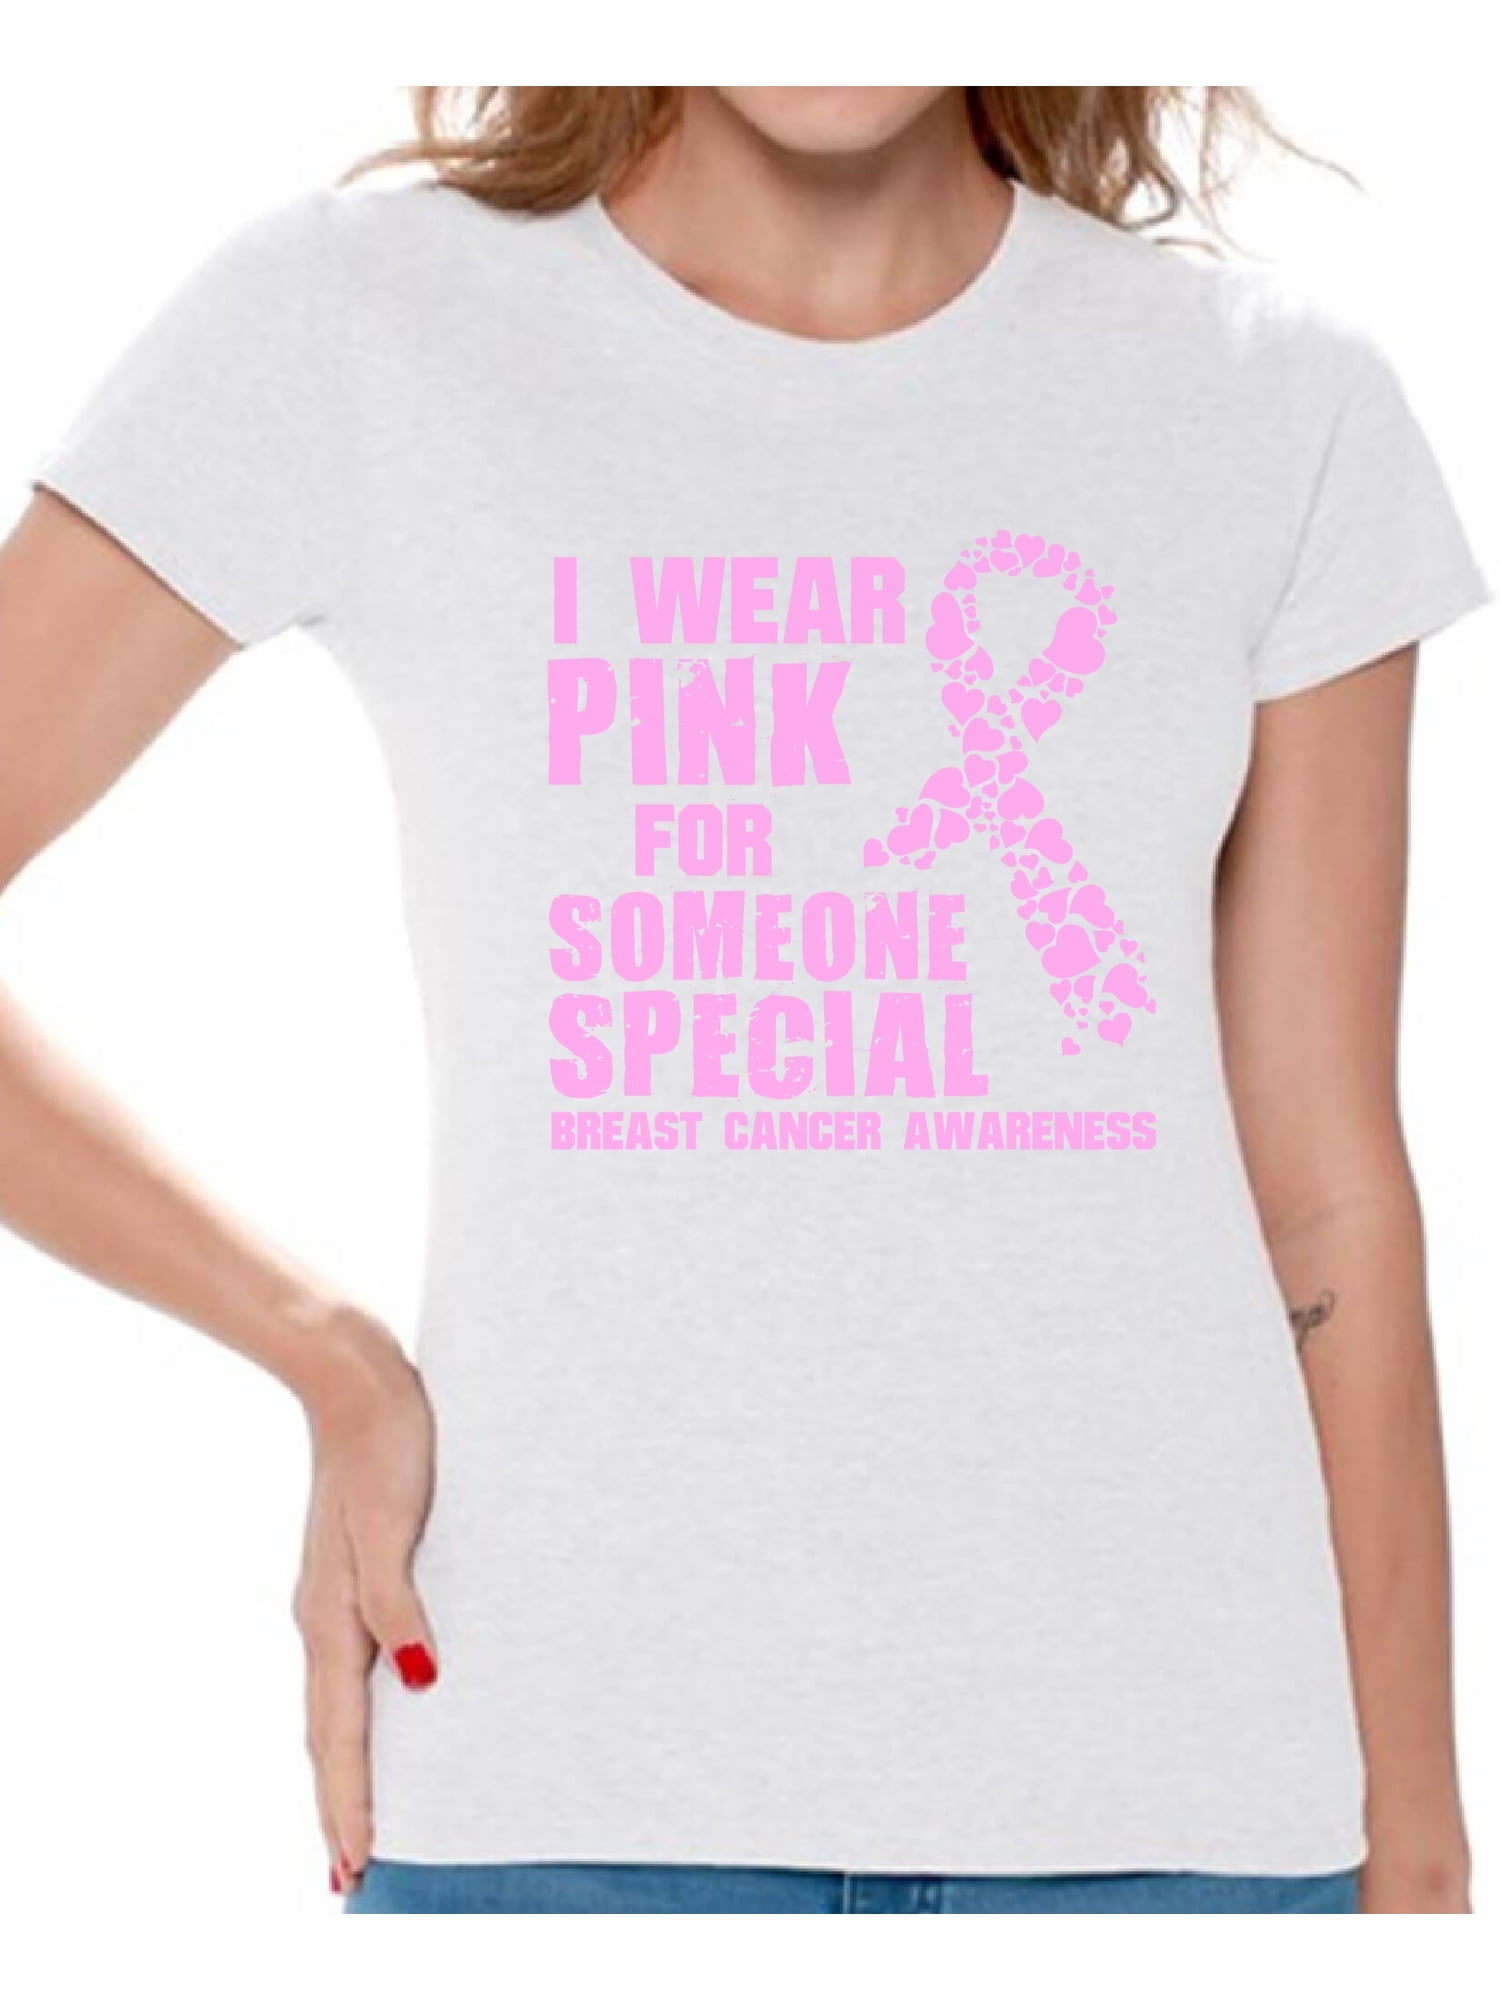 Cancer Awareness Shirt Cancer Shirt Pink Ribbon Shirt Cancer Support Shirt Cancer Support Breast Cancer Shirts for Women Warrior Shirt